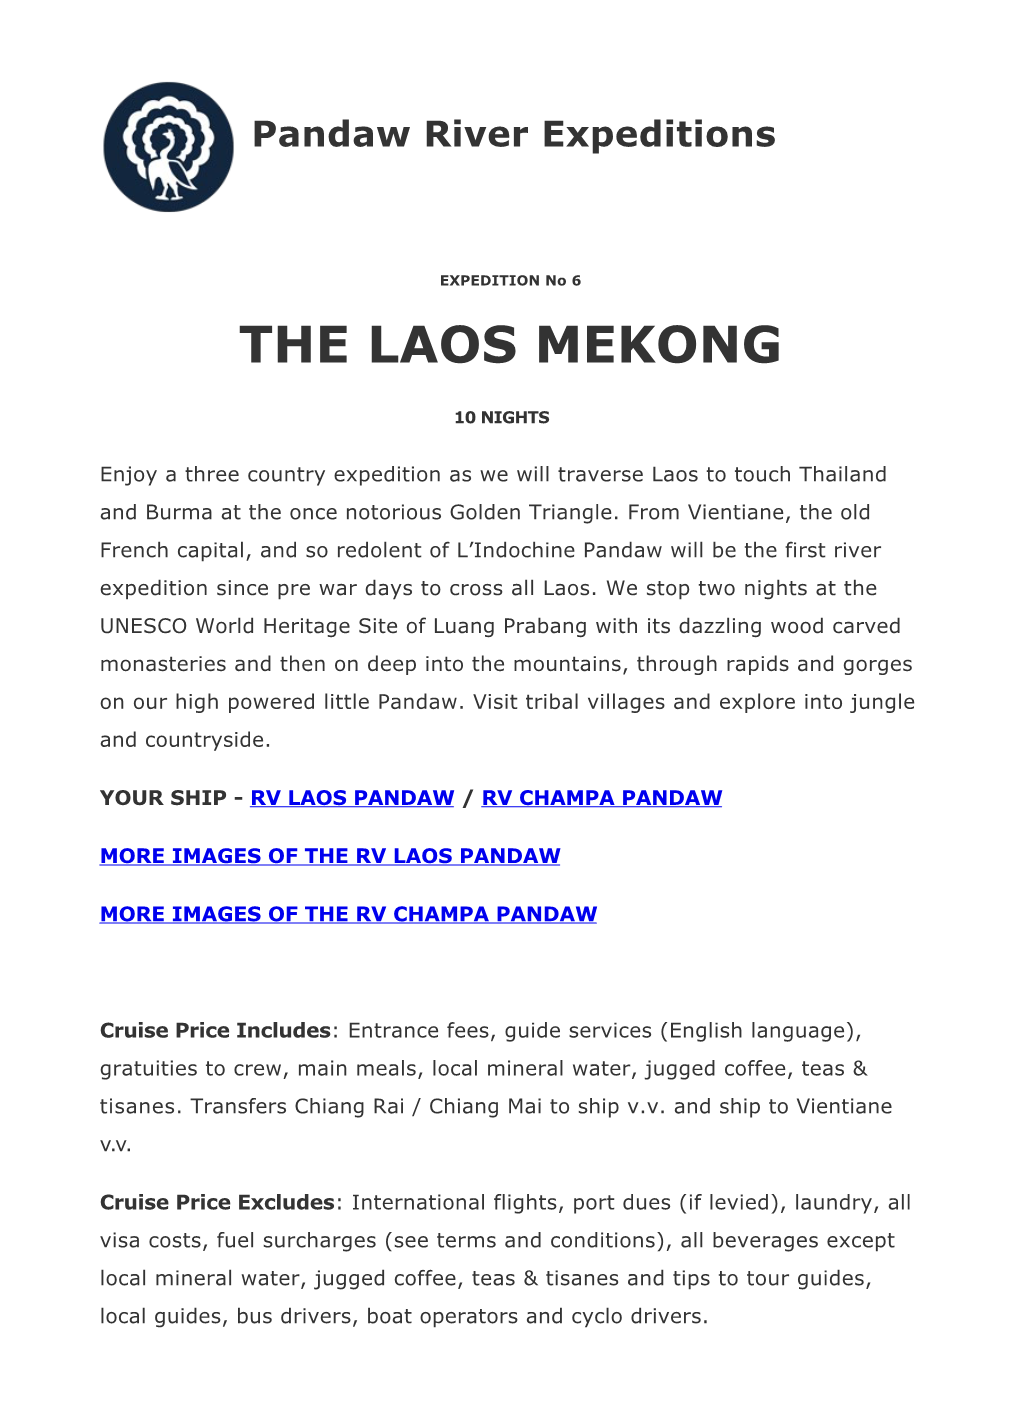 The Laos Mekong